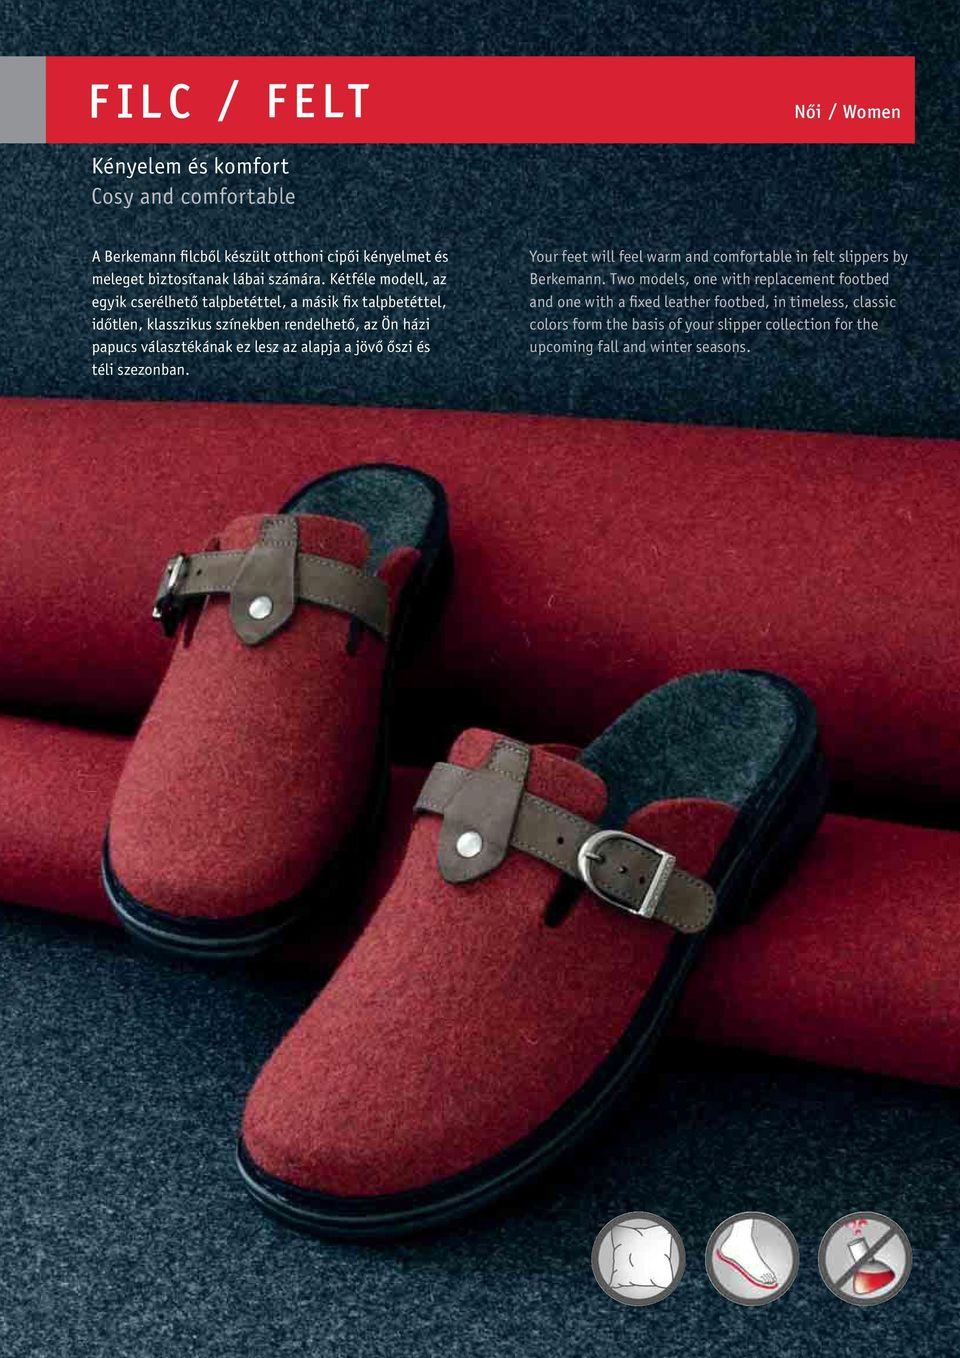 lesz az alapja a jövő őszi és téli szezonban. Your feet will feel warm and comfortable in felt slippers by Berkemann.